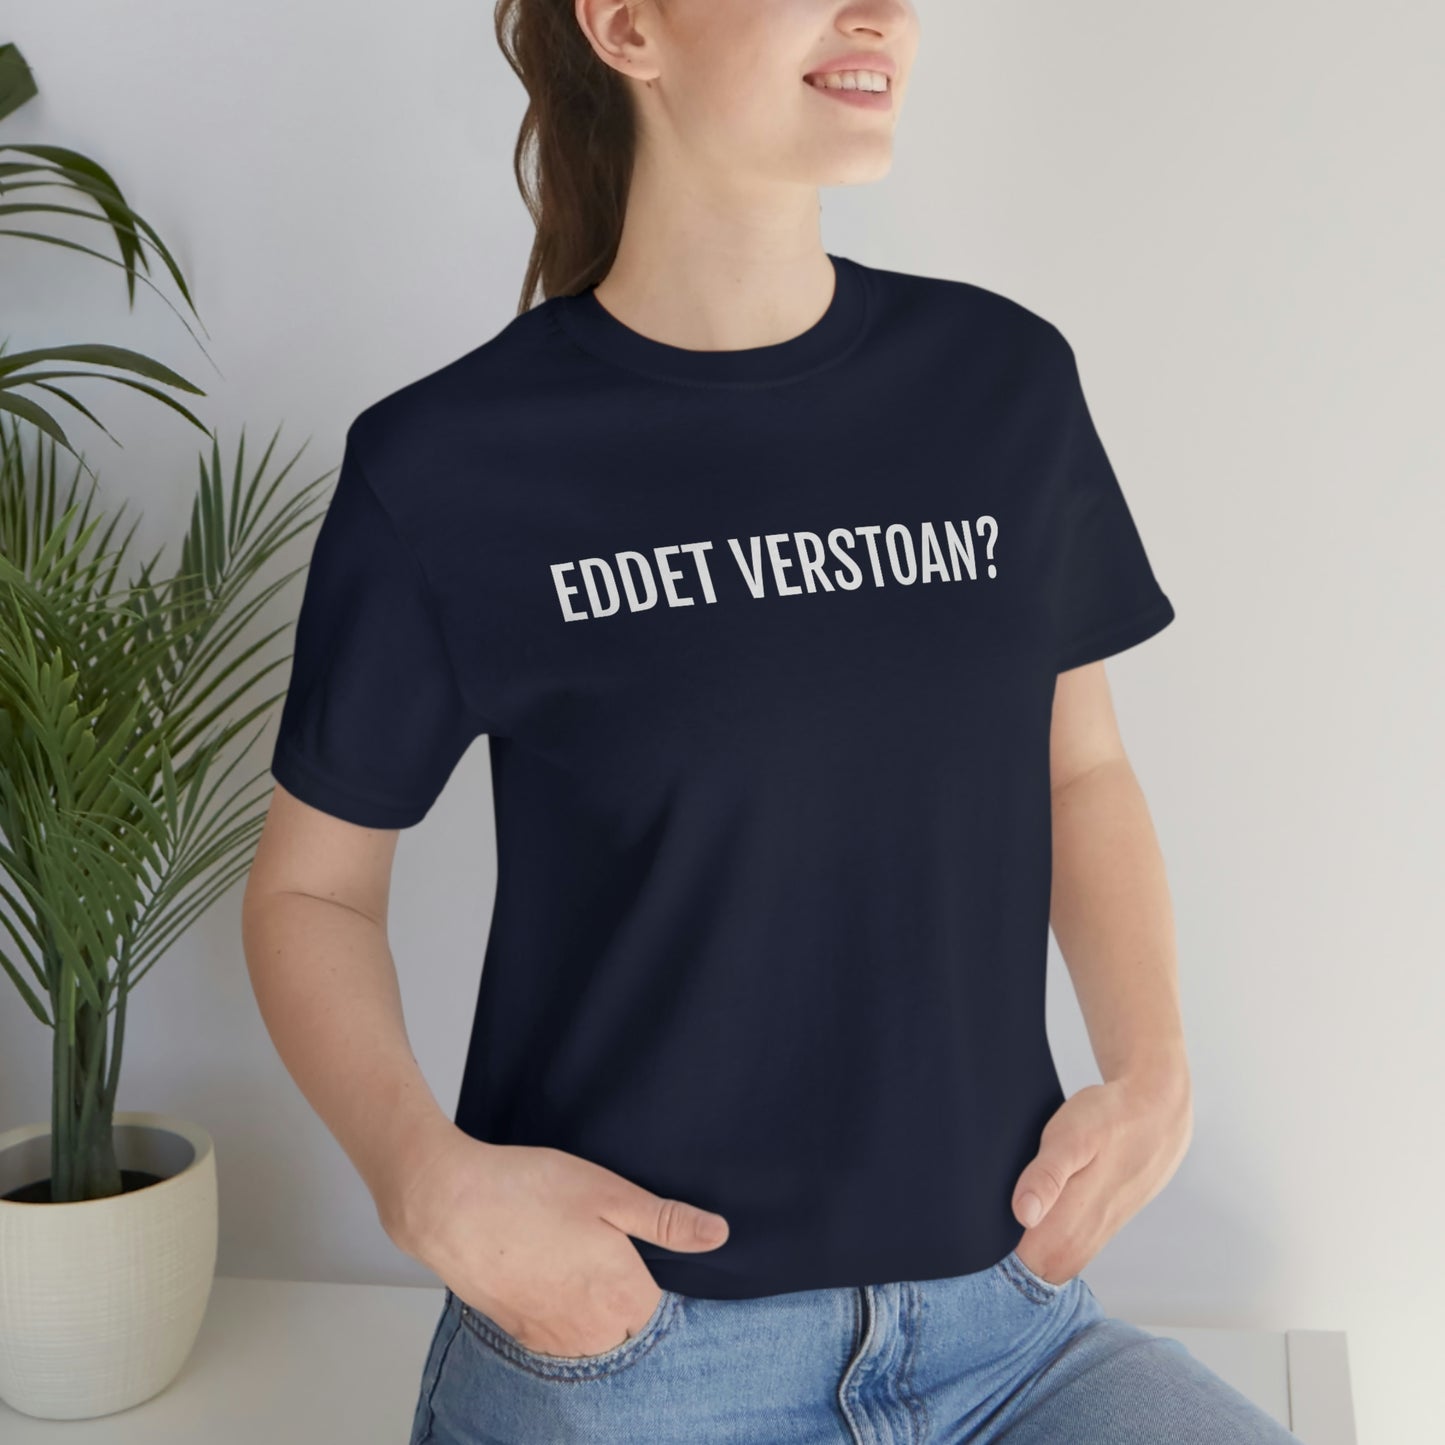 EDDET VERSTOAN | Unisex T-Shirt uit Antwerpen